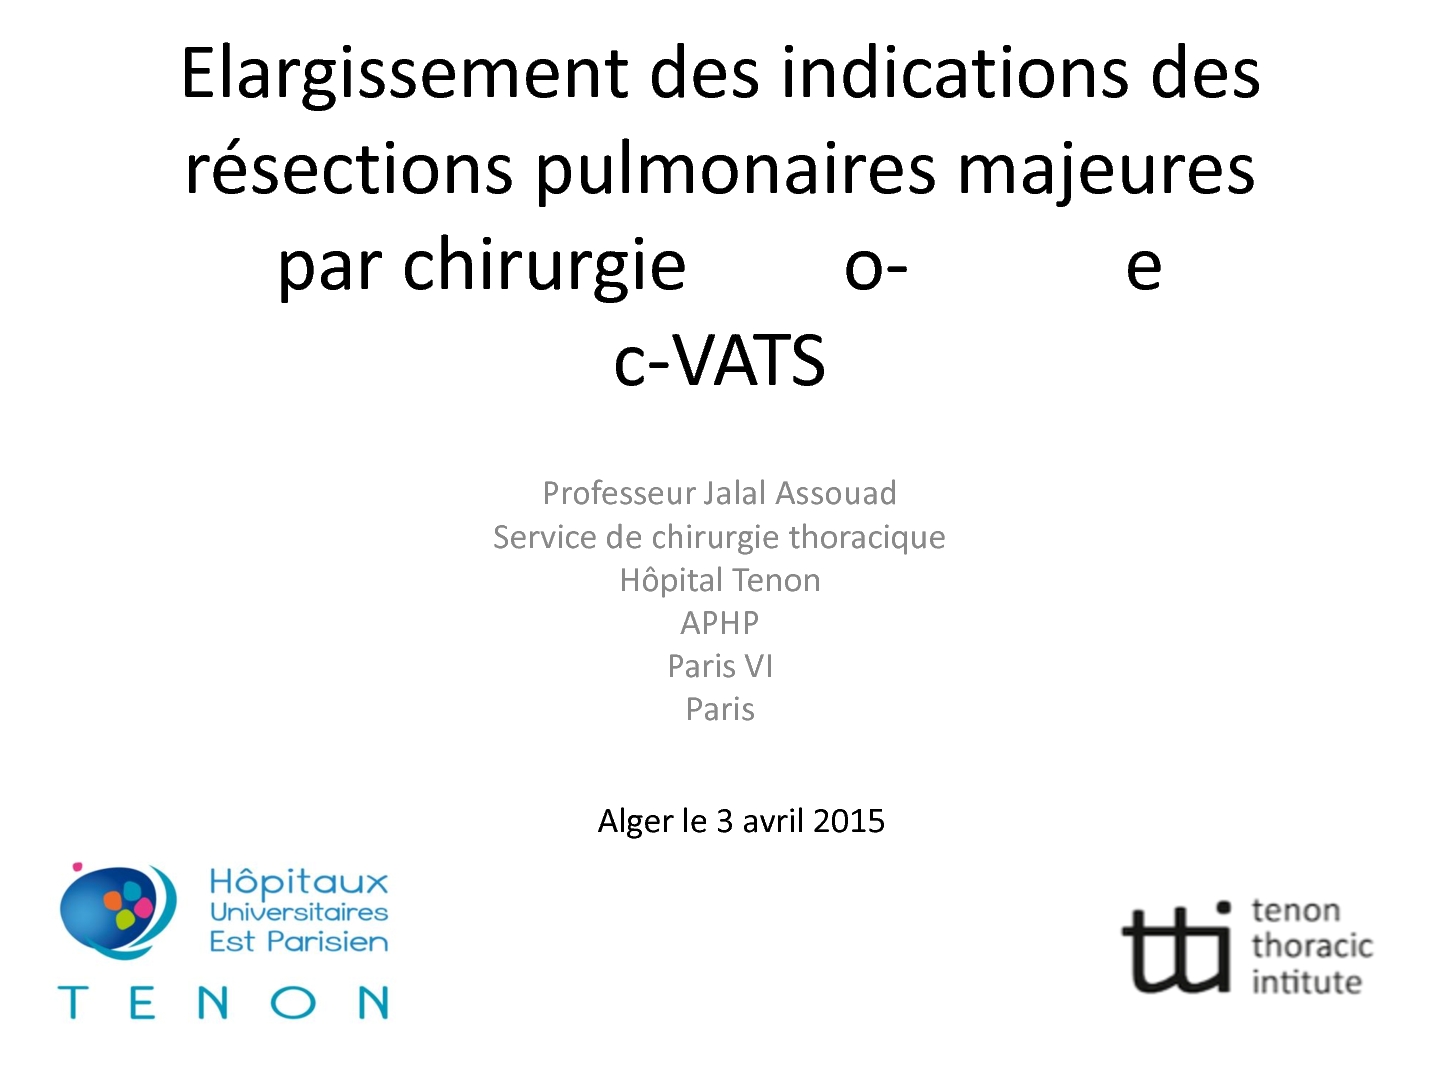 Elargissement des indications des résections pulmonaires majeures par chirurgie o-e c-VATS